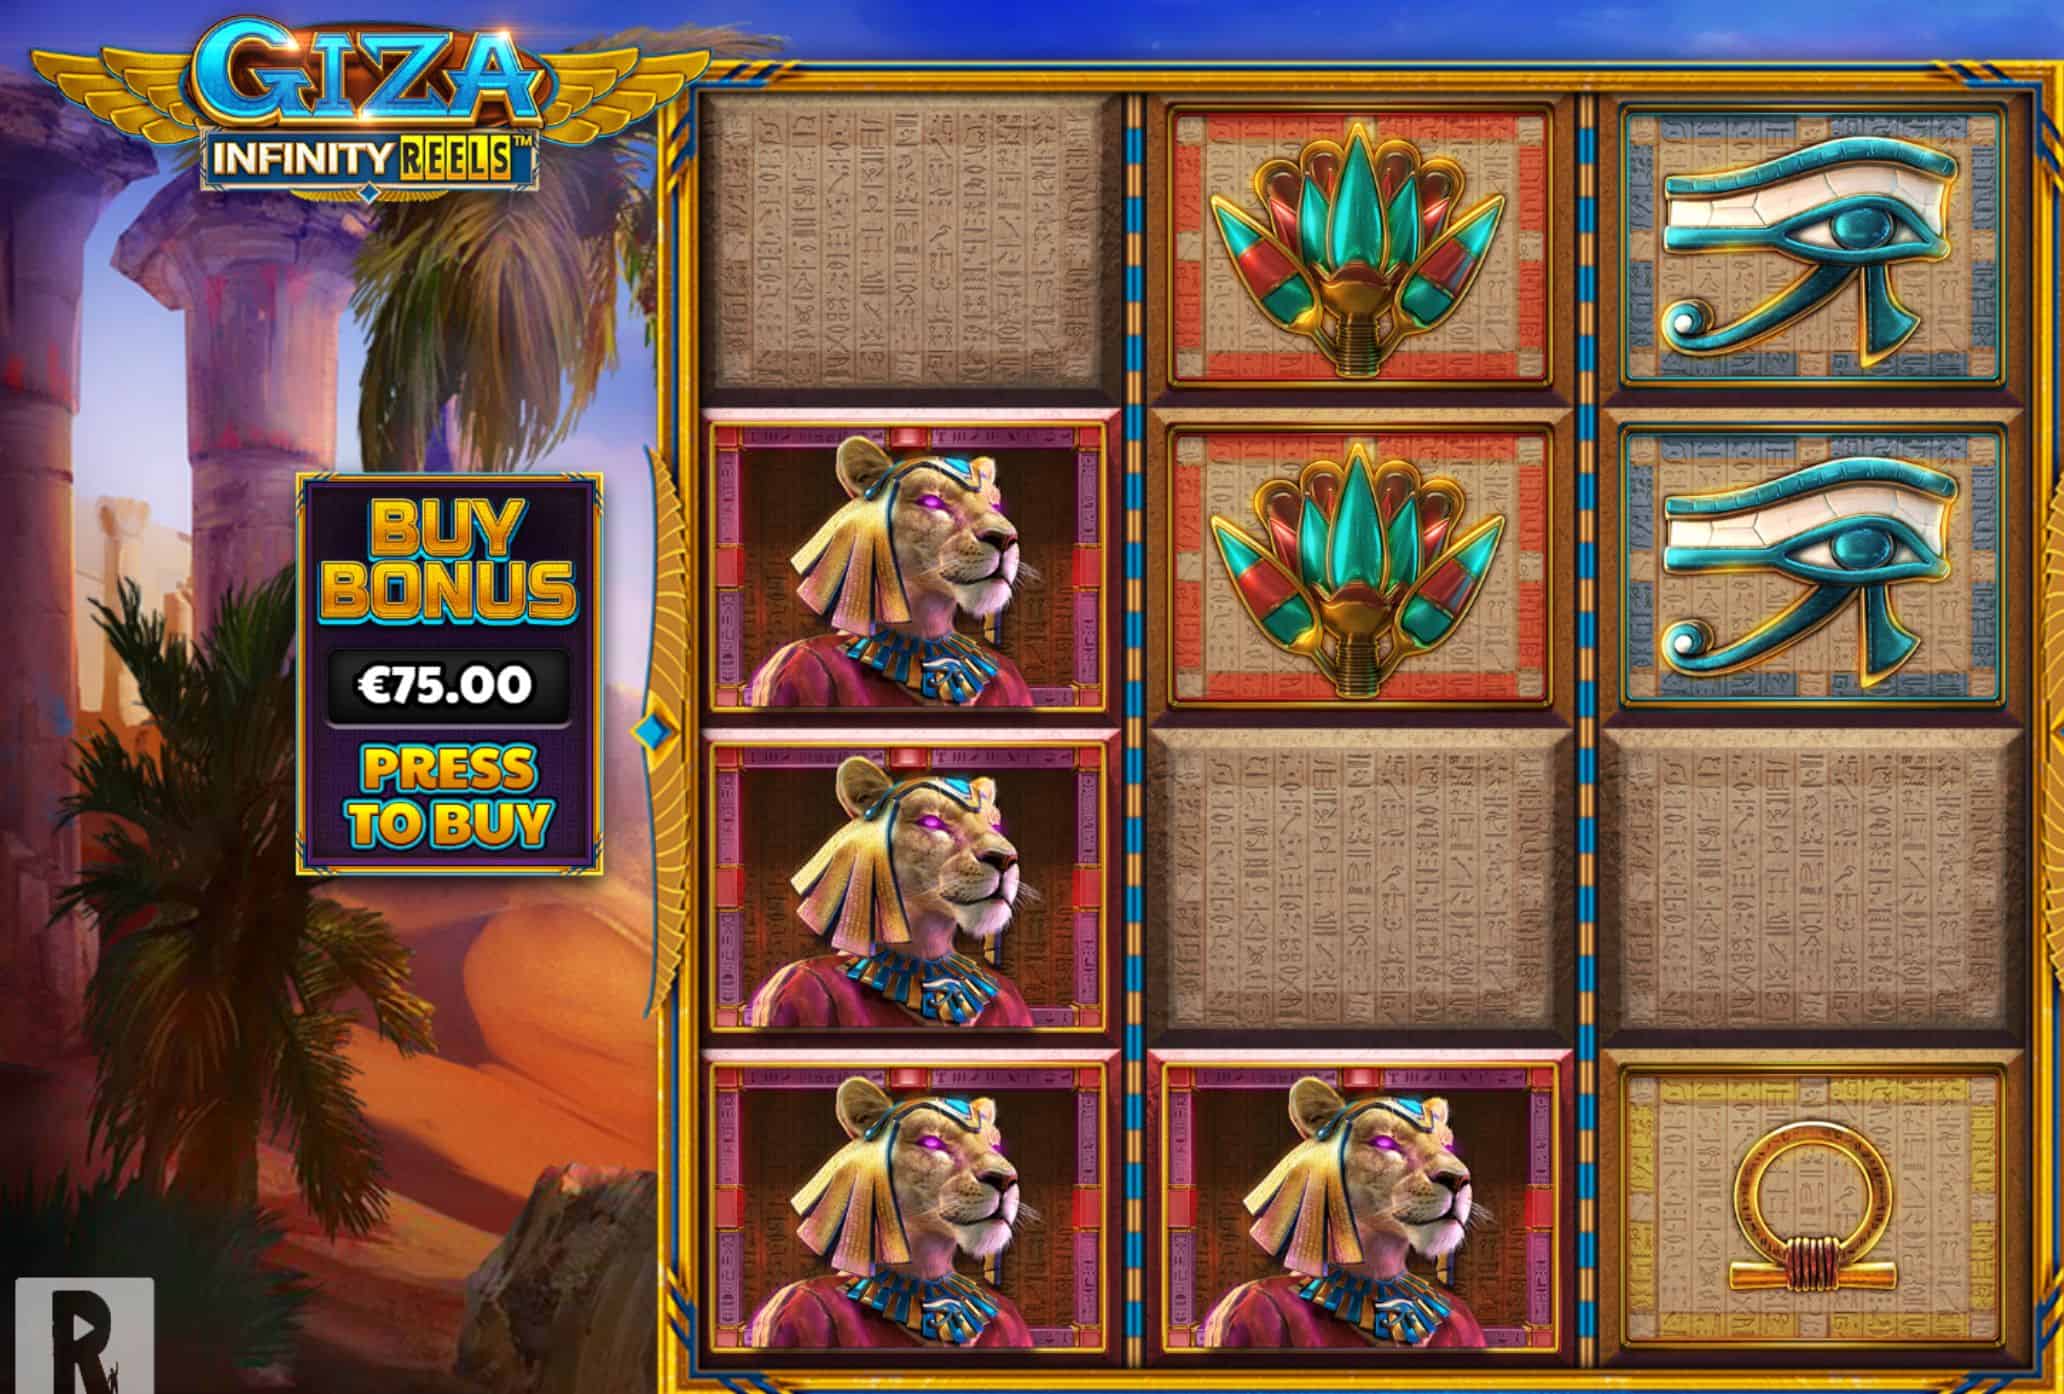 Giza Infinity Reels Slot Game Free Play at Casino Ireland 01